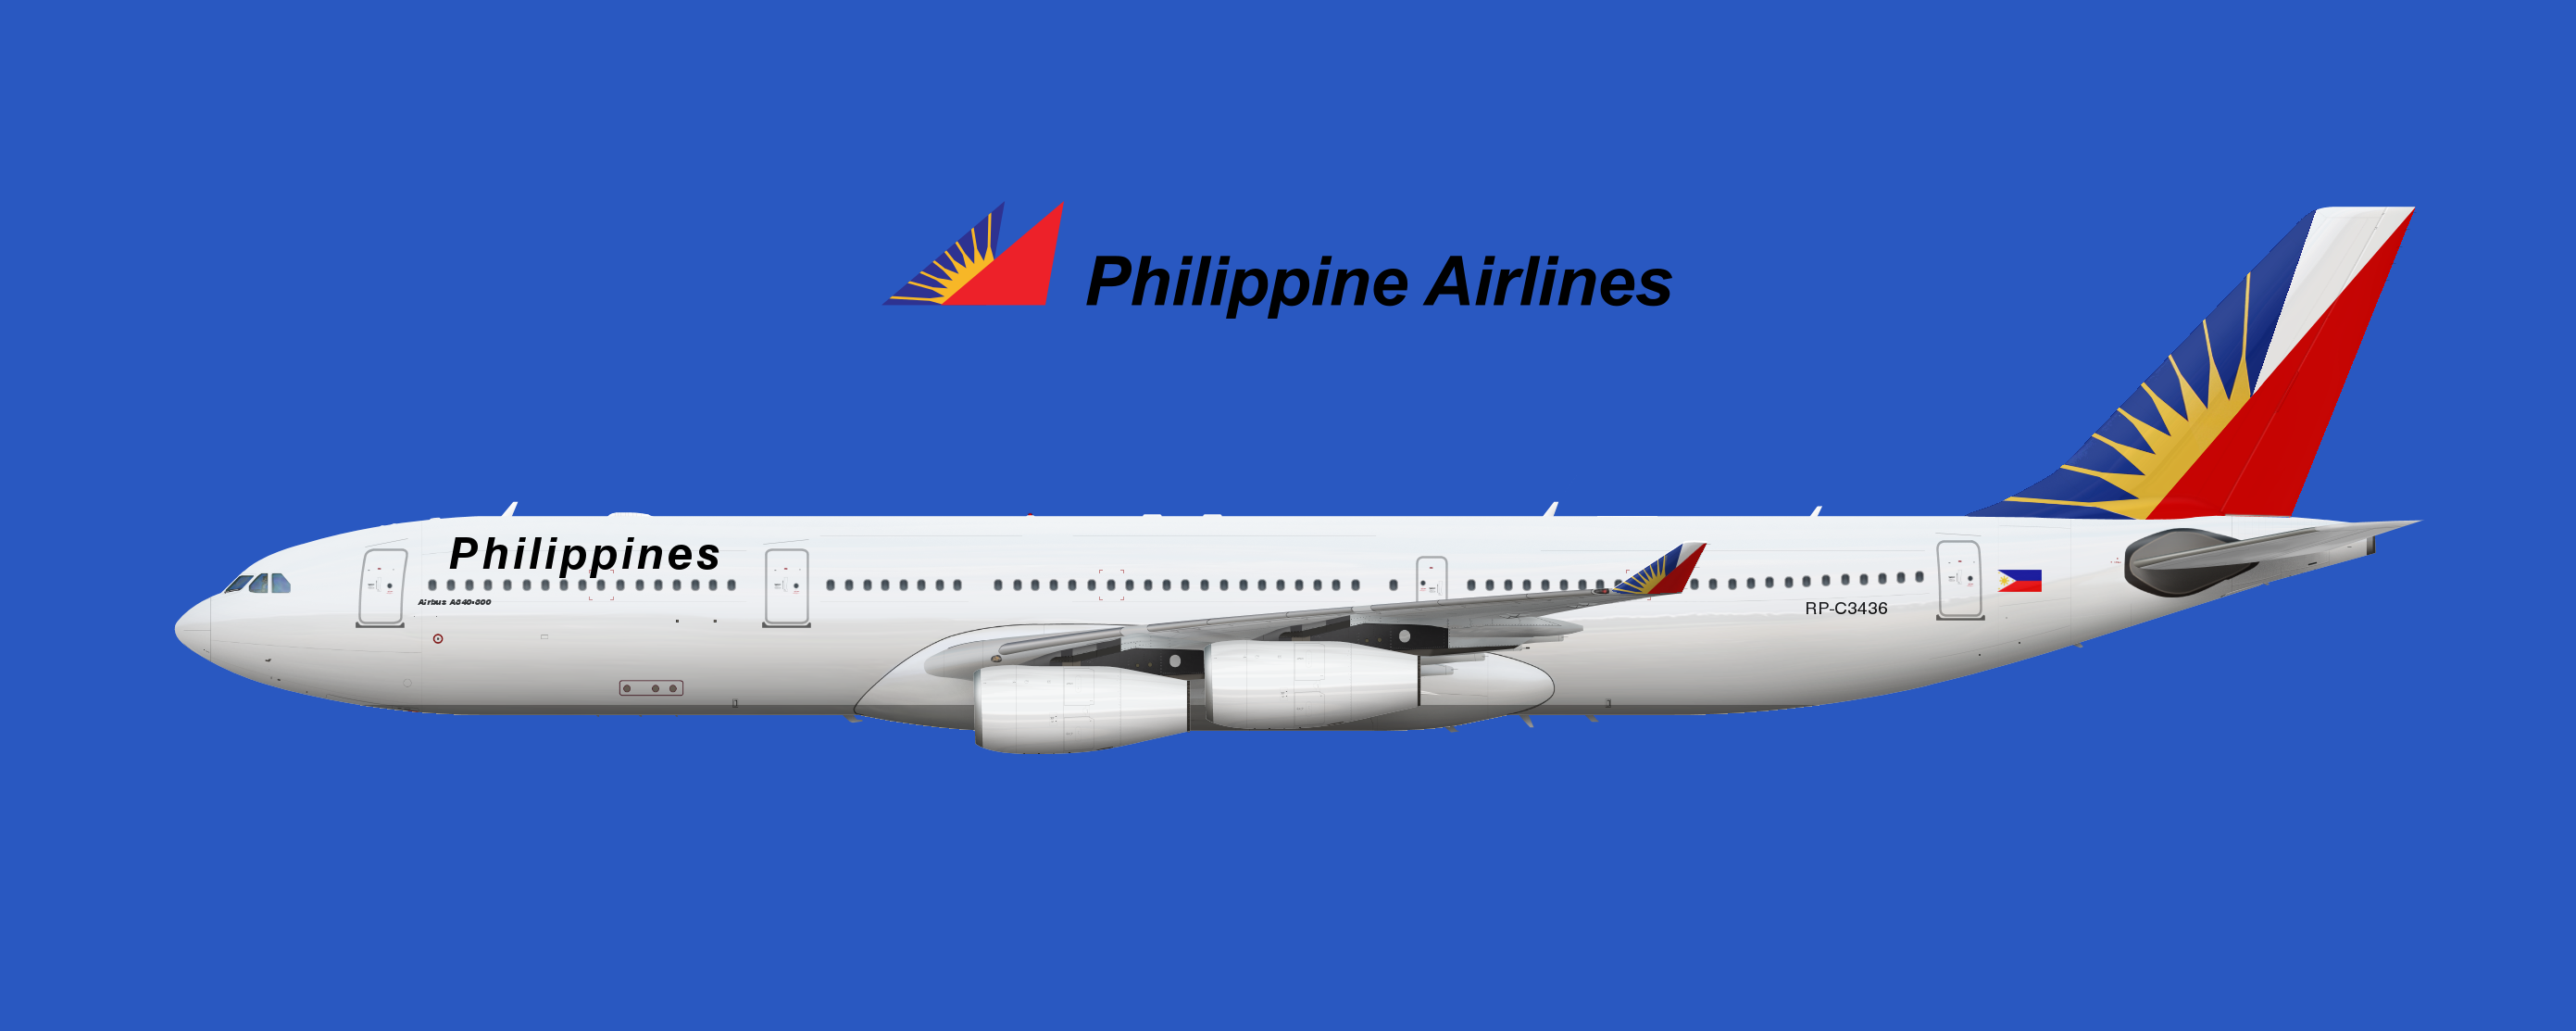 Национальная авиакомпания Филиппин Philippine Airlines